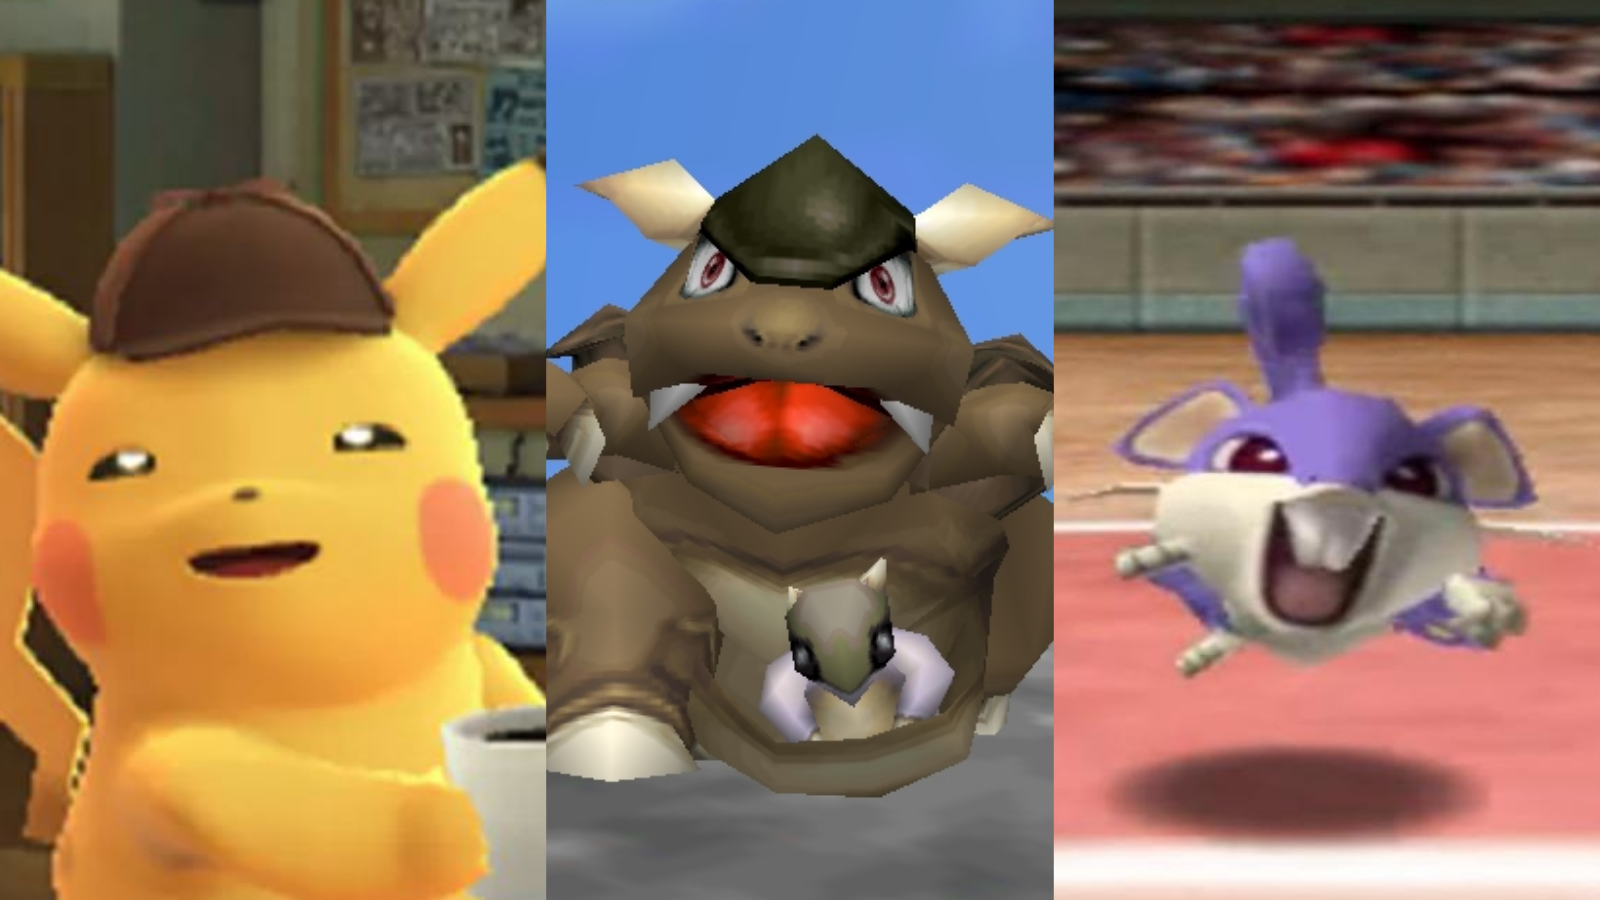 6 Pokémon para vencer em Kanto